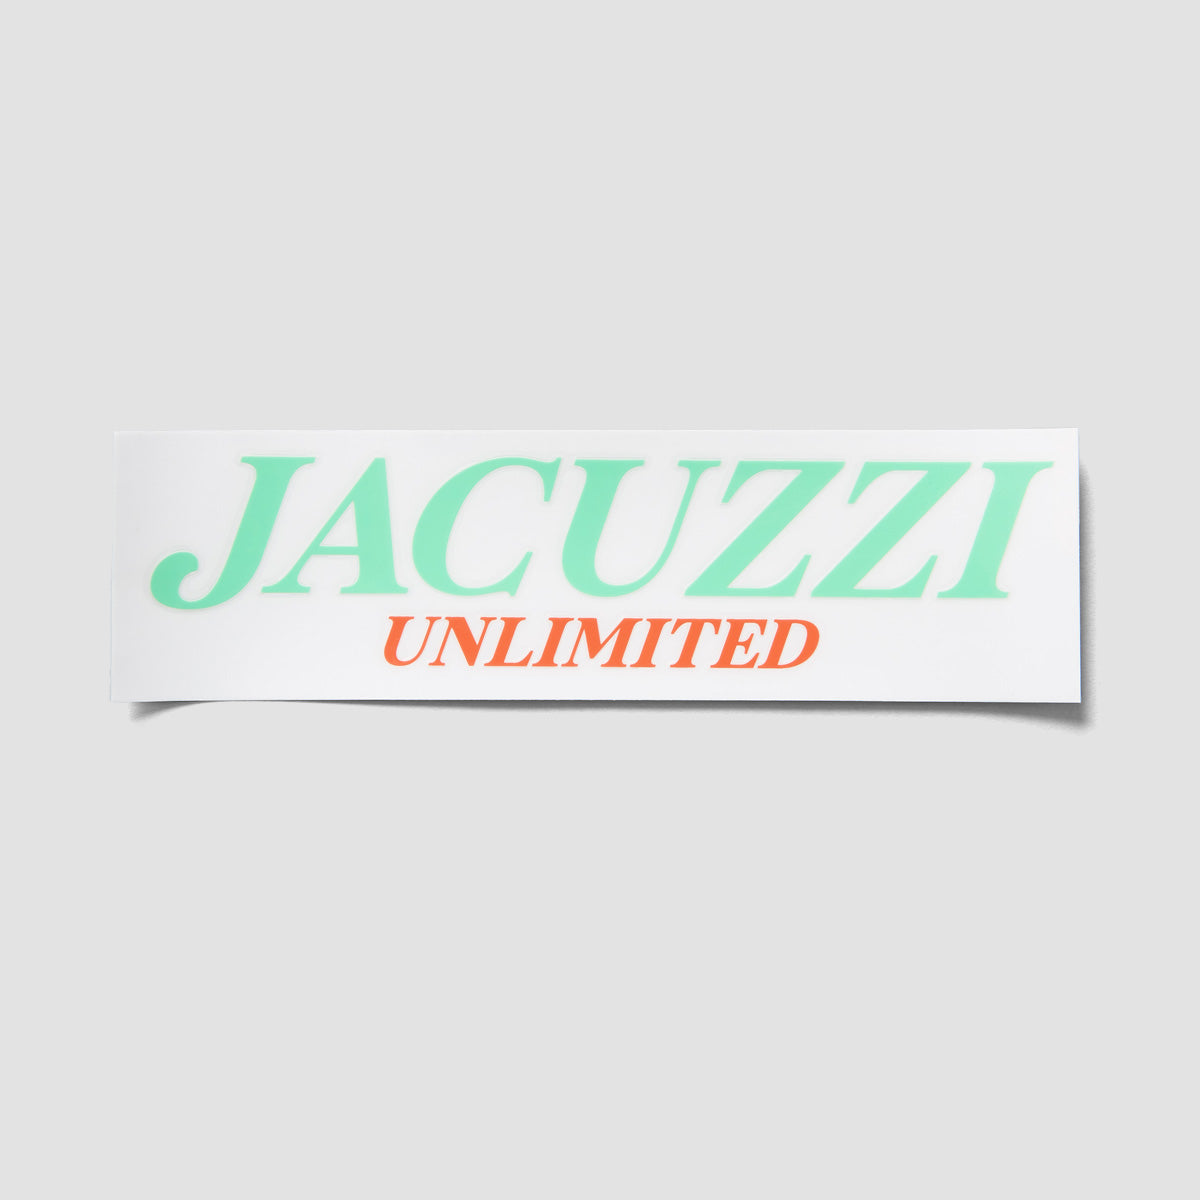 Jacuzzi Unlimited Flavor Vinyl Die-Cut Sticker 215x60mm